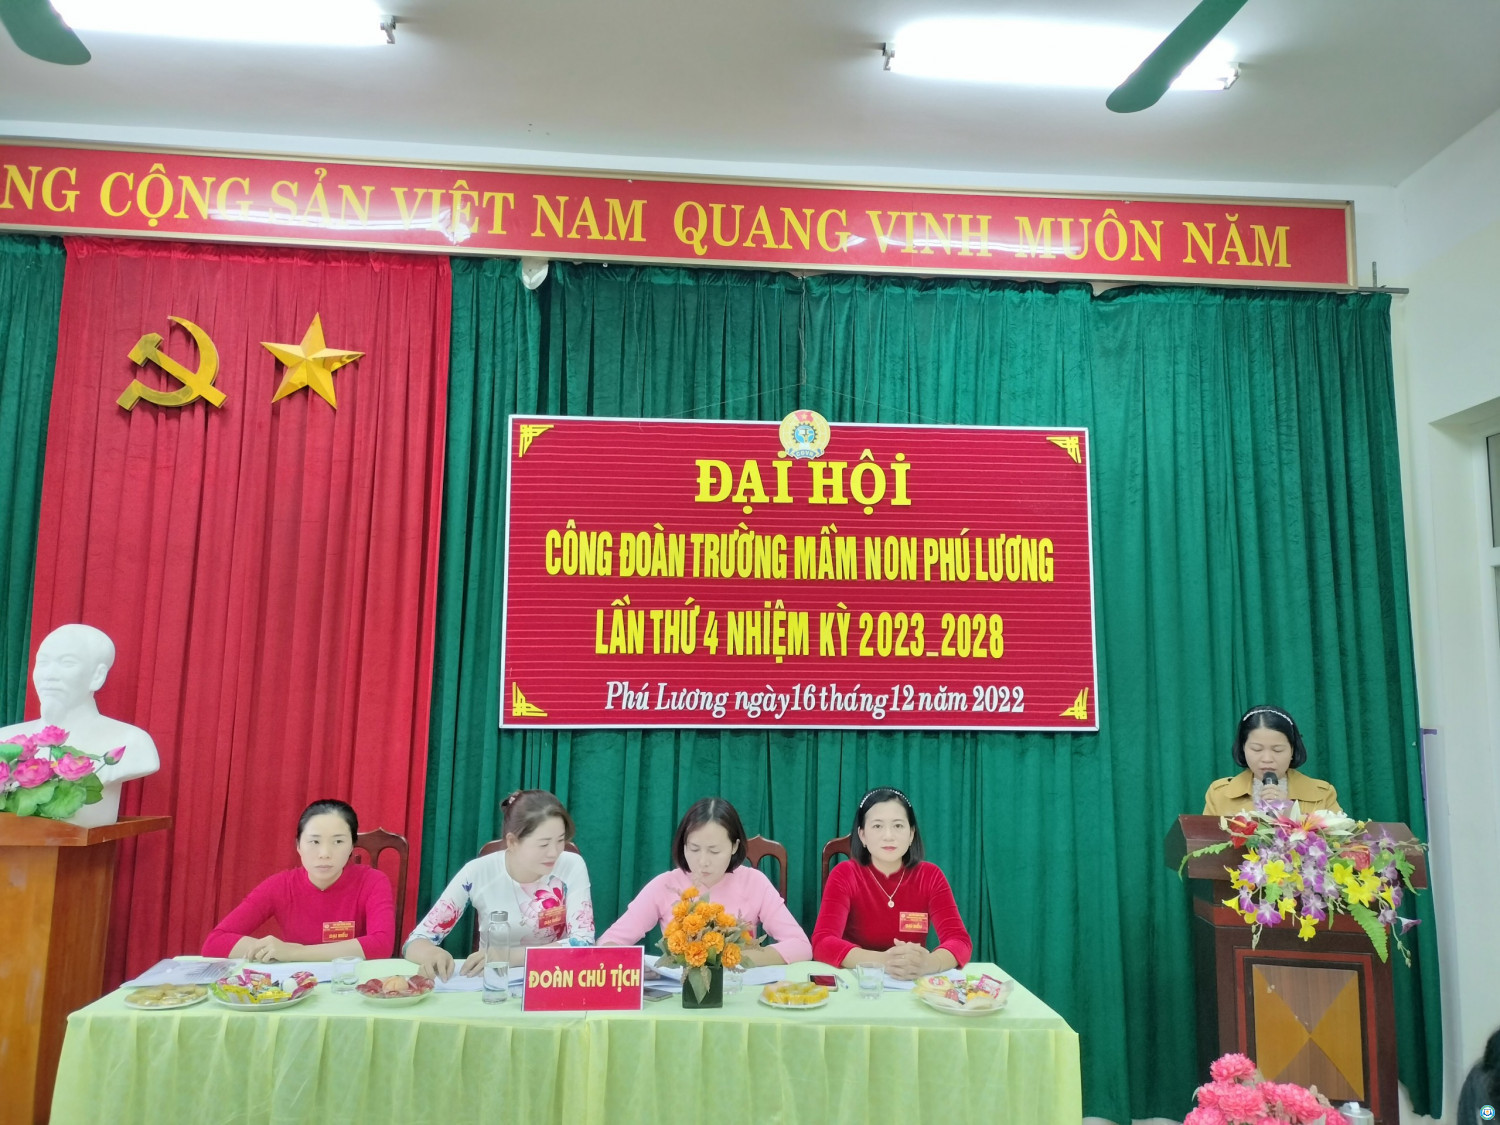 Đồng chí Hiệu trưởng Nguyễn Thị Cúc lên phát biểu